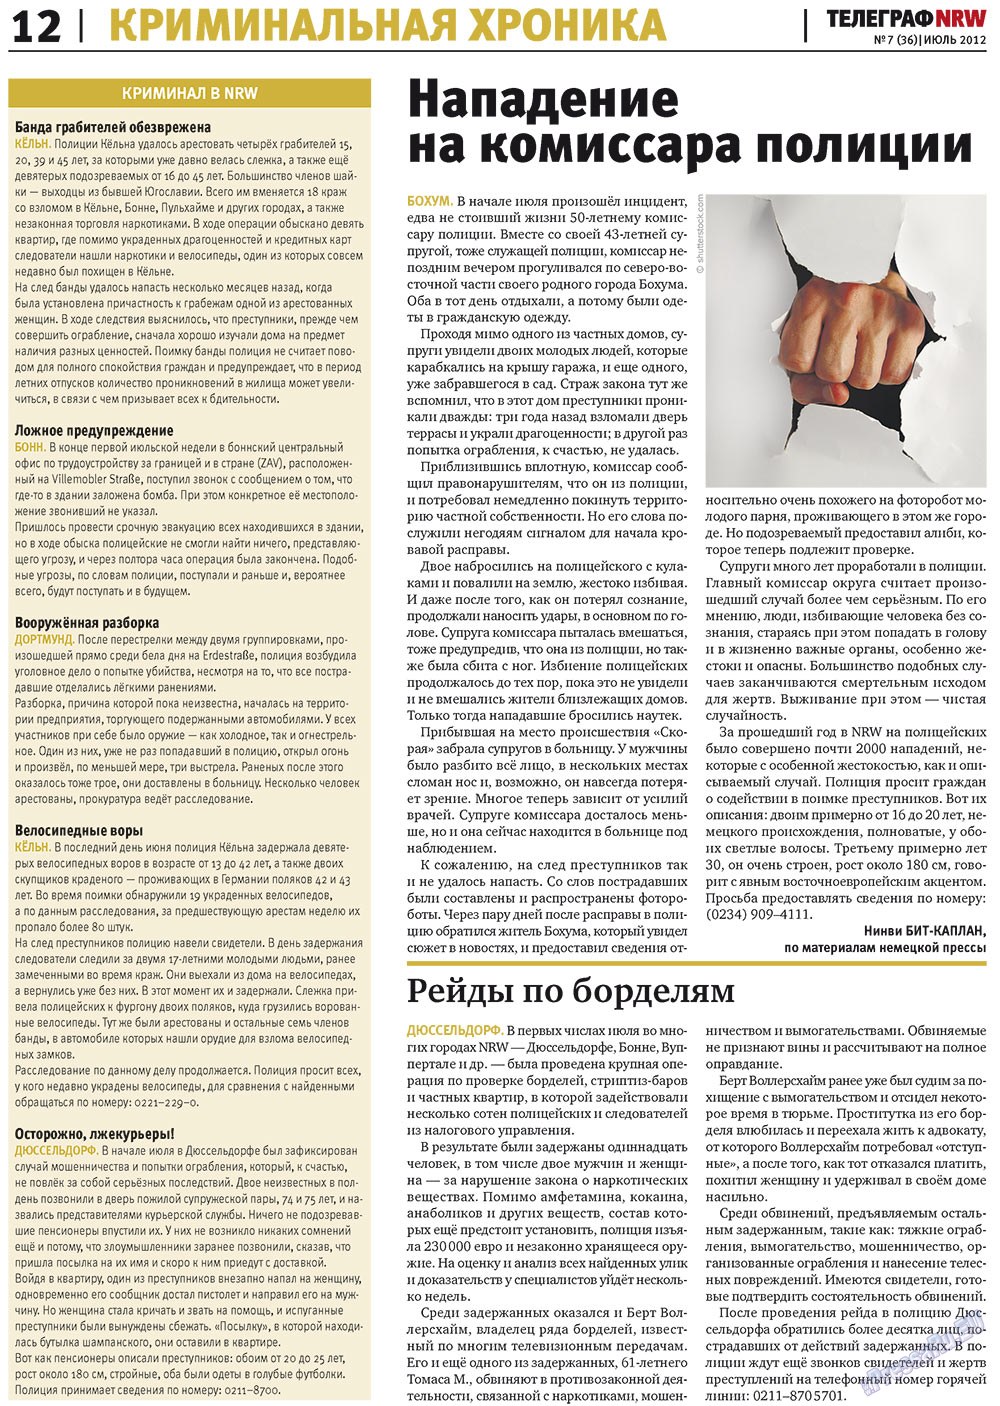 Телеграф NRW (газета). 2012 год, номер 7, стр. 12